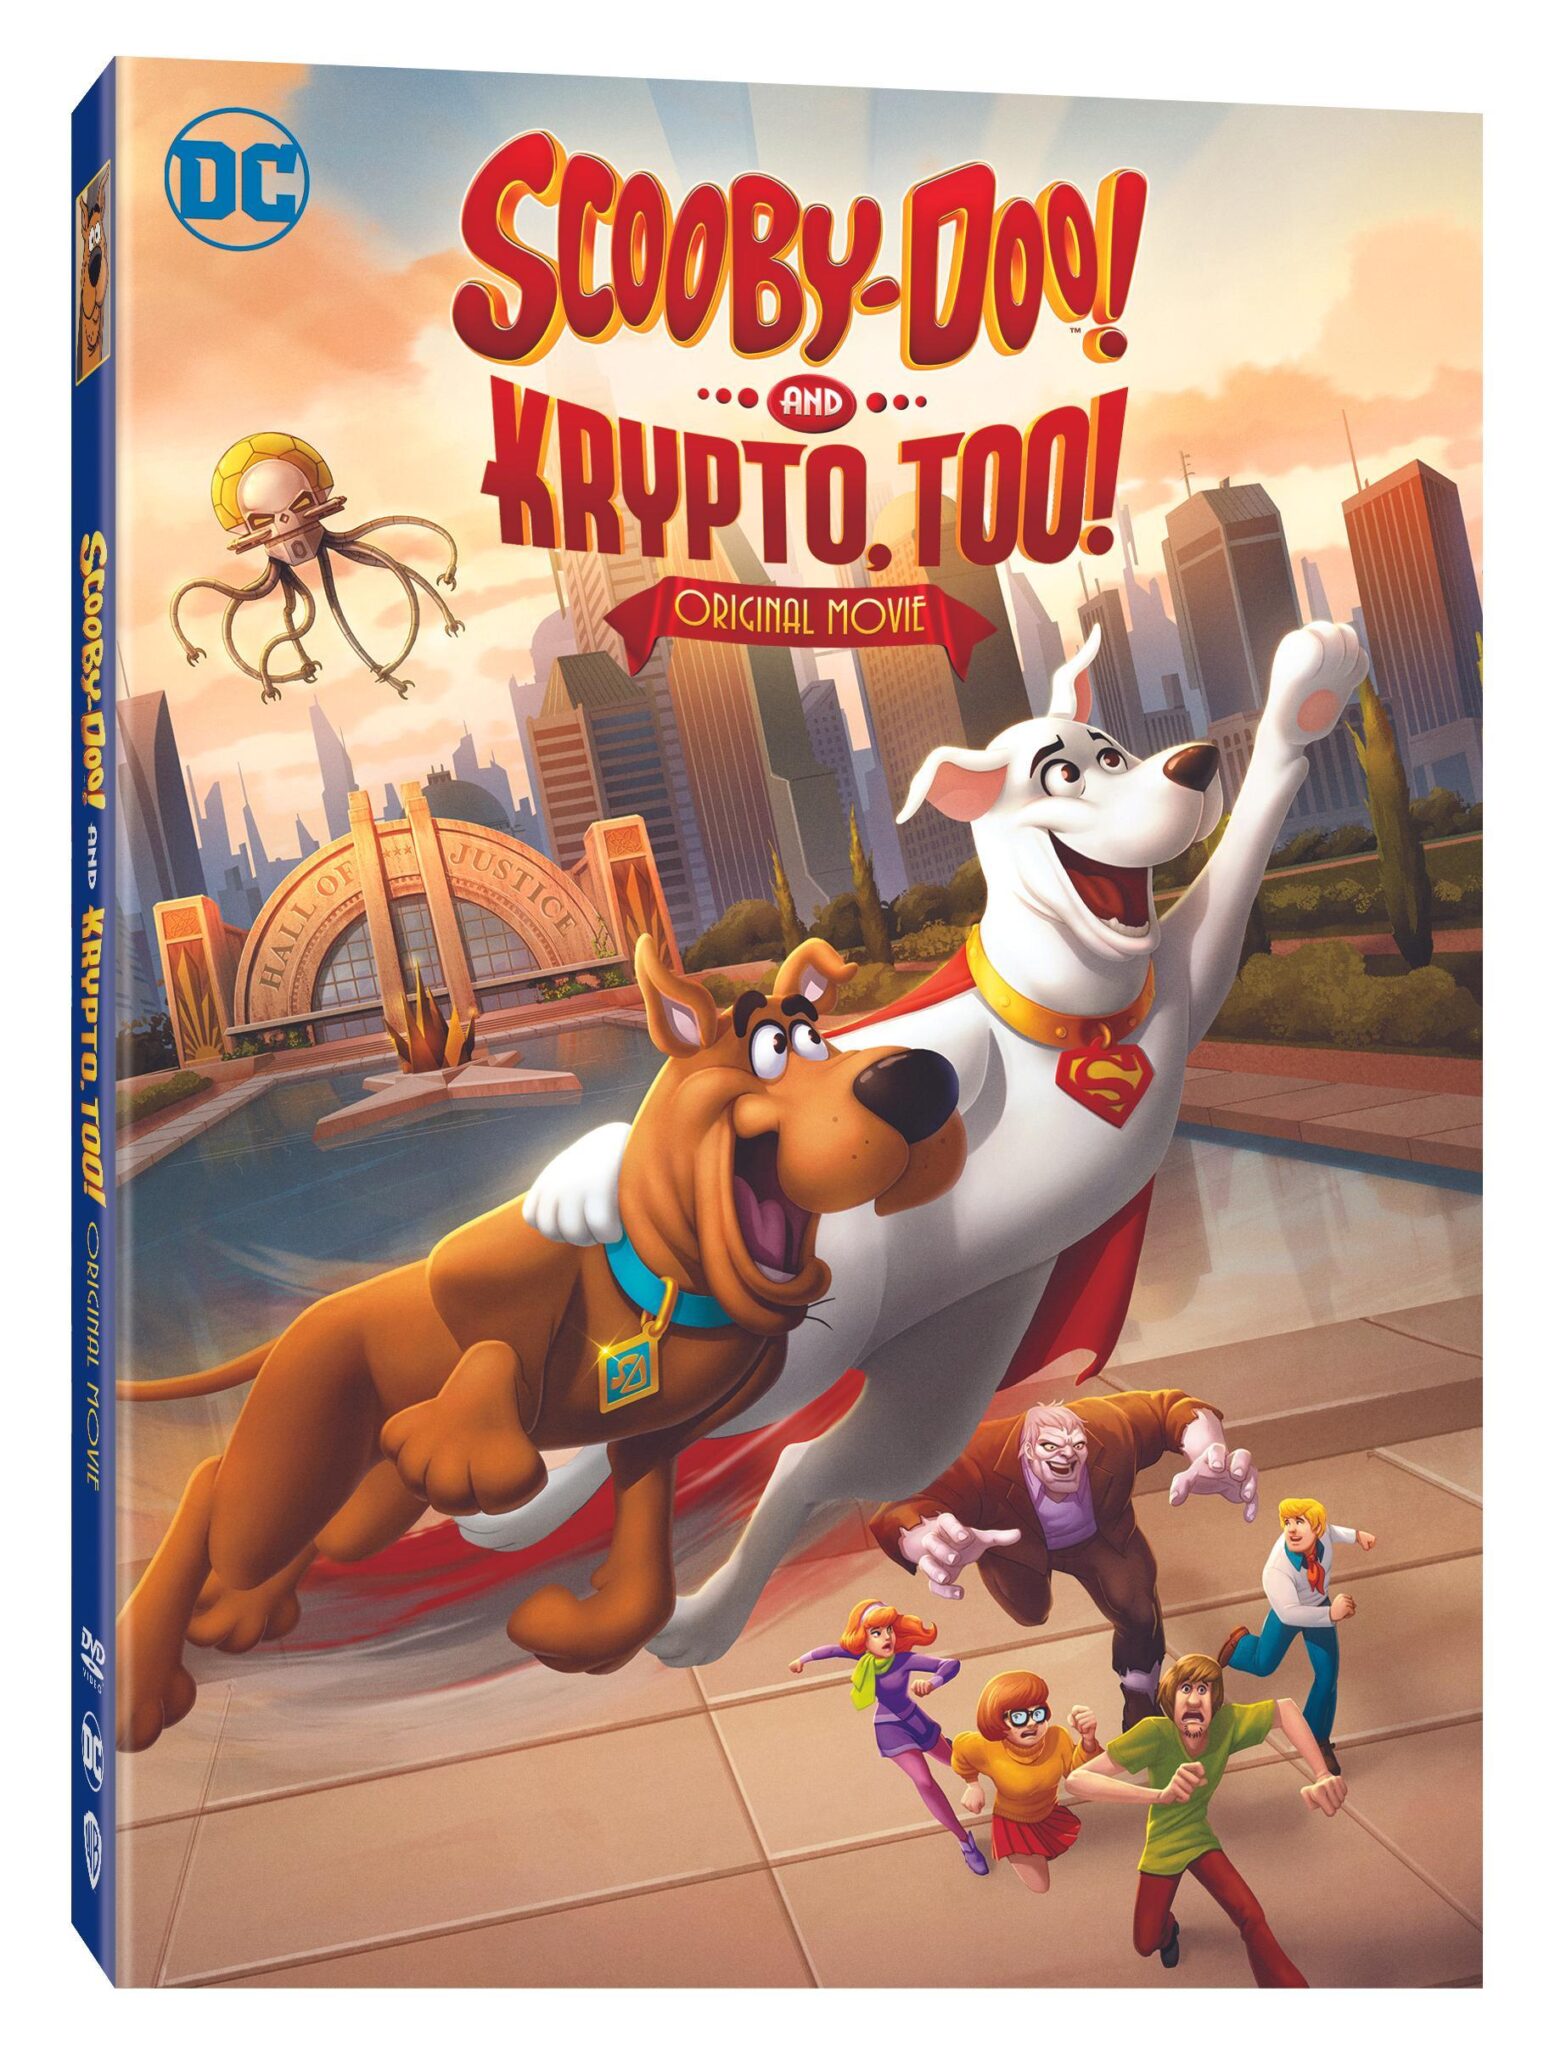 The Inevitable Meeting Between ScoobyDoo & Krypto is Coming in Sept